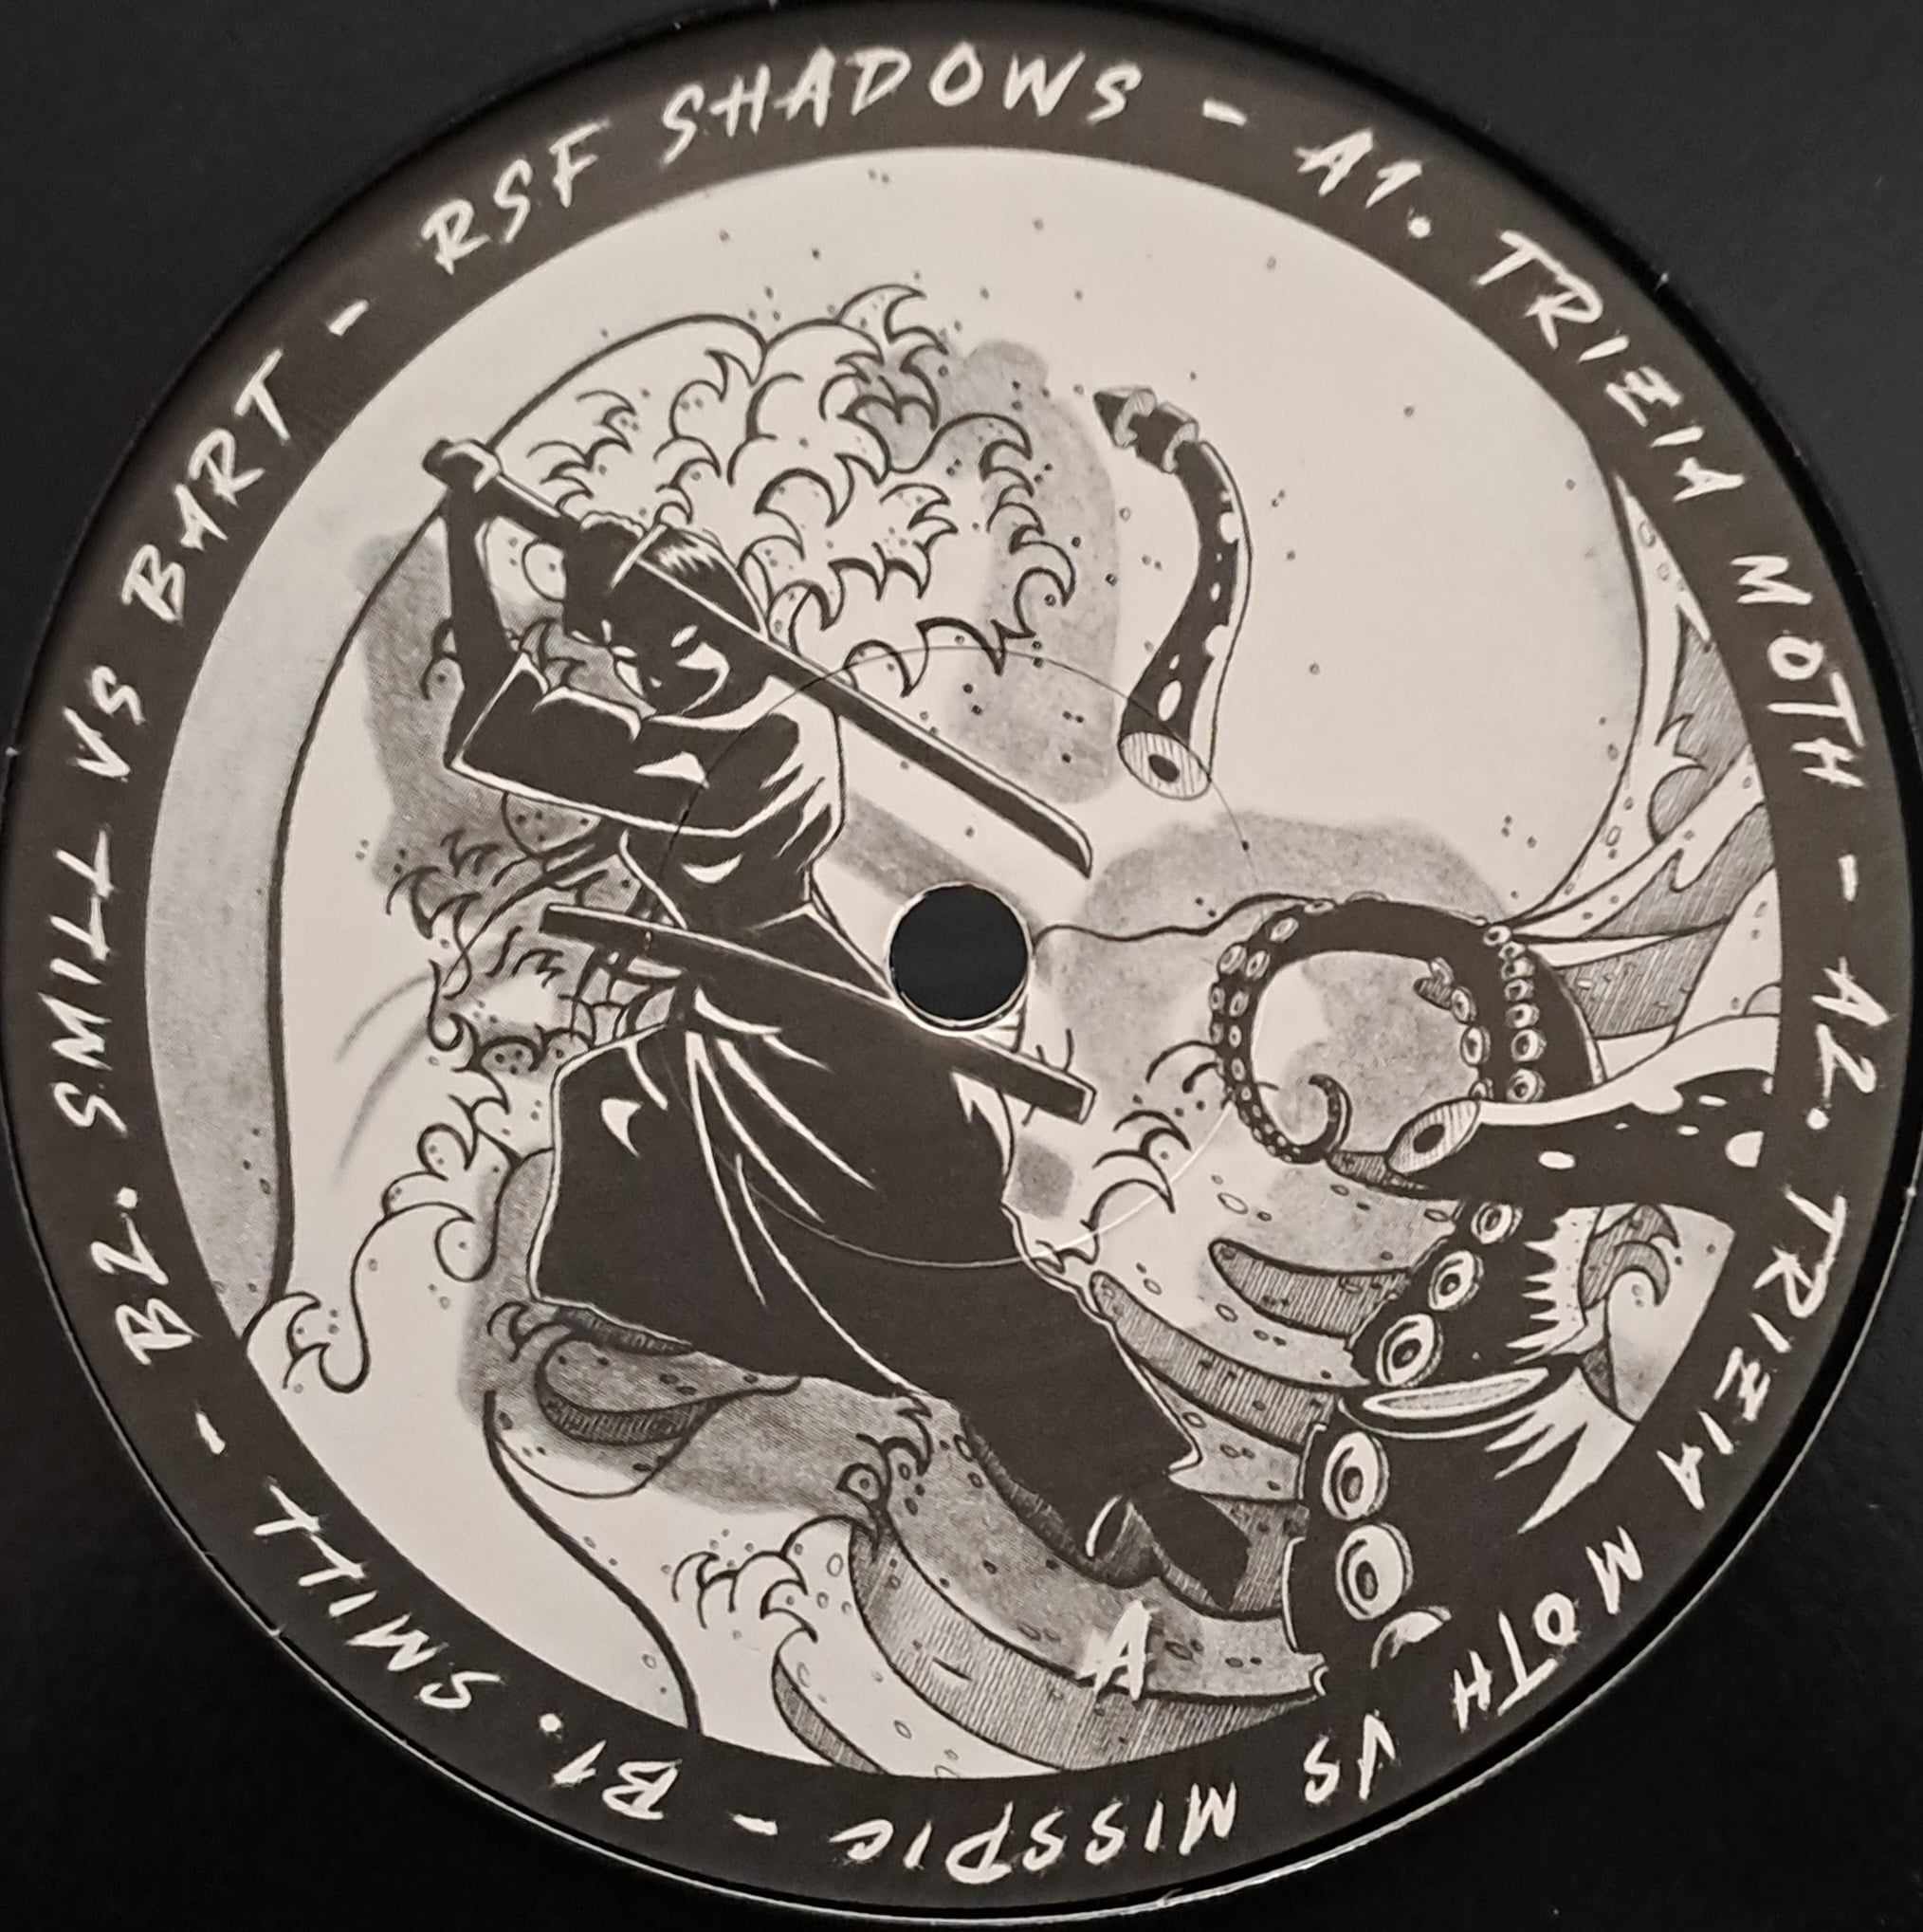 RSF Shadows (toute dernière copie en stock) - vinyle freetekno